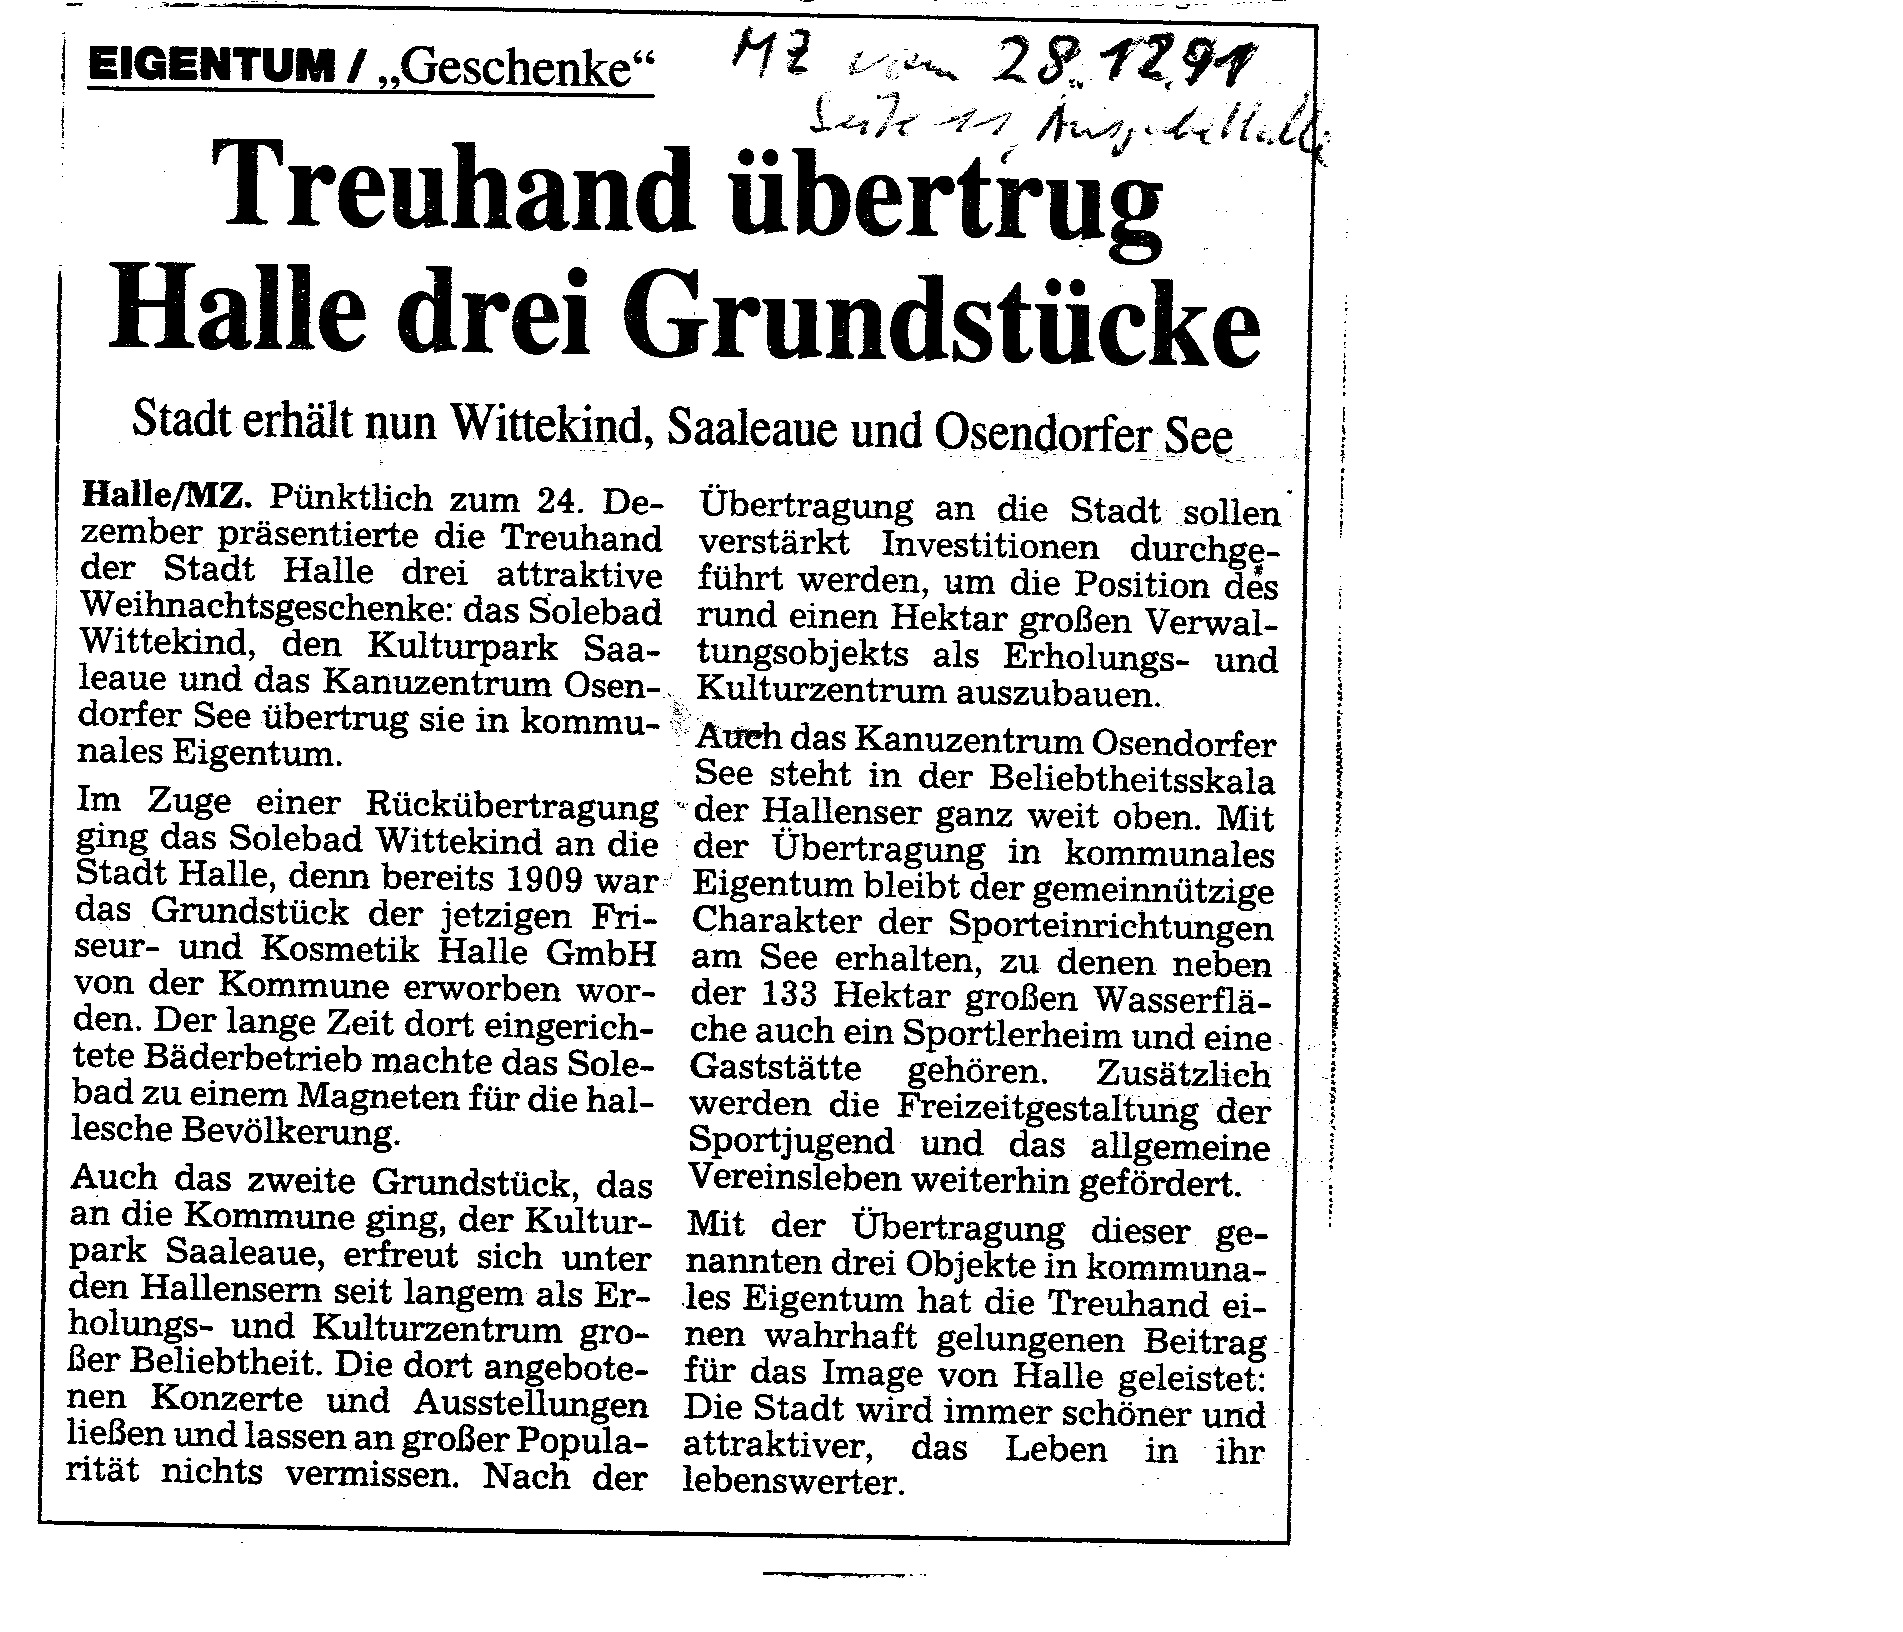 1991-12-28 MZ Treuhand übertrug Halle deri Grundstücke